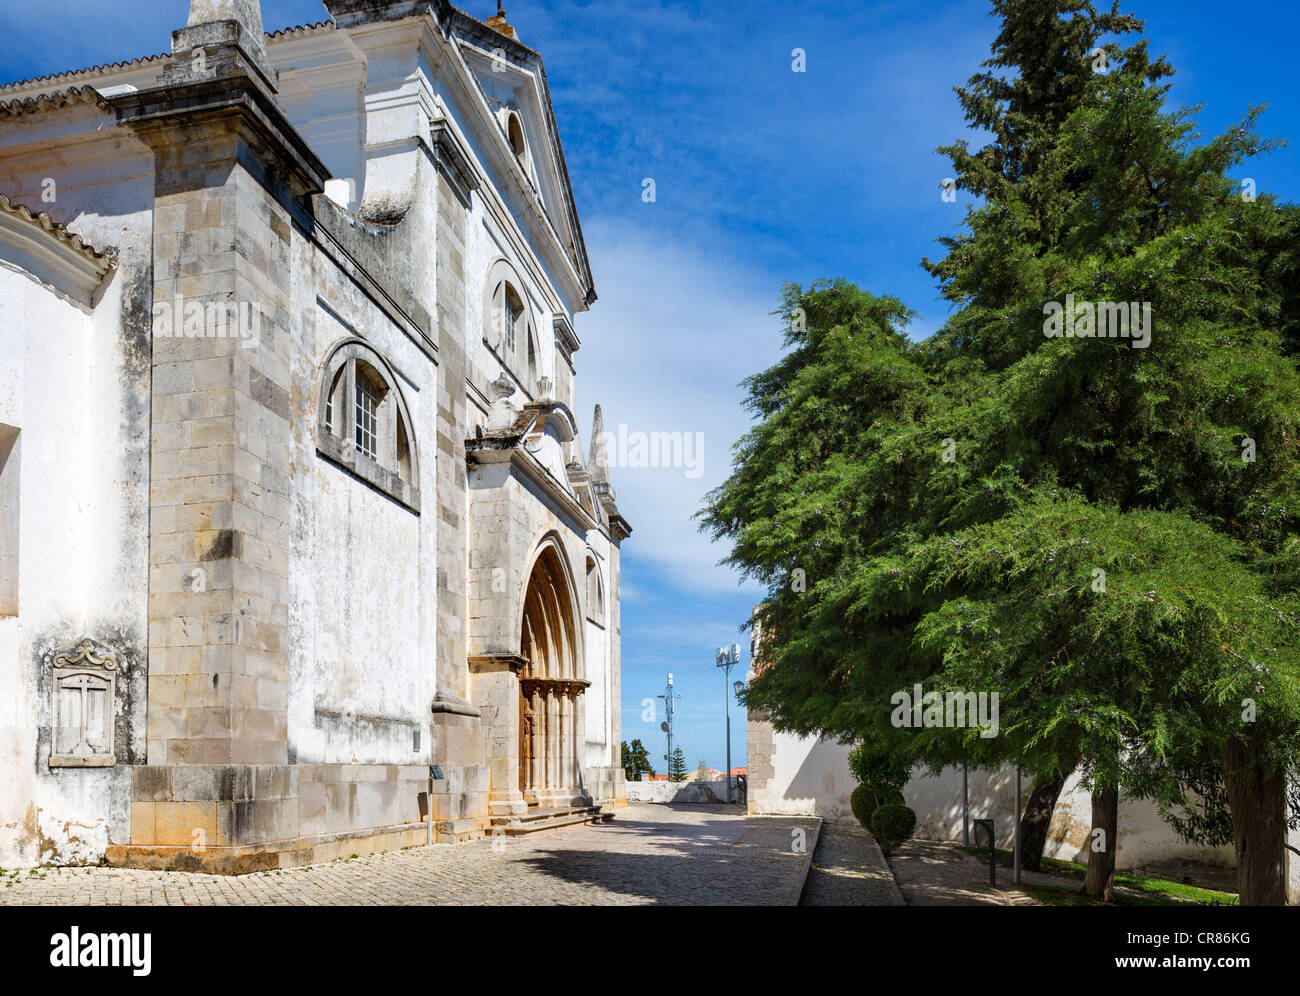 Igreja de Santa Maria do Castelo in the Old Town, Tavira, Algarve, Portugal Stock Photo